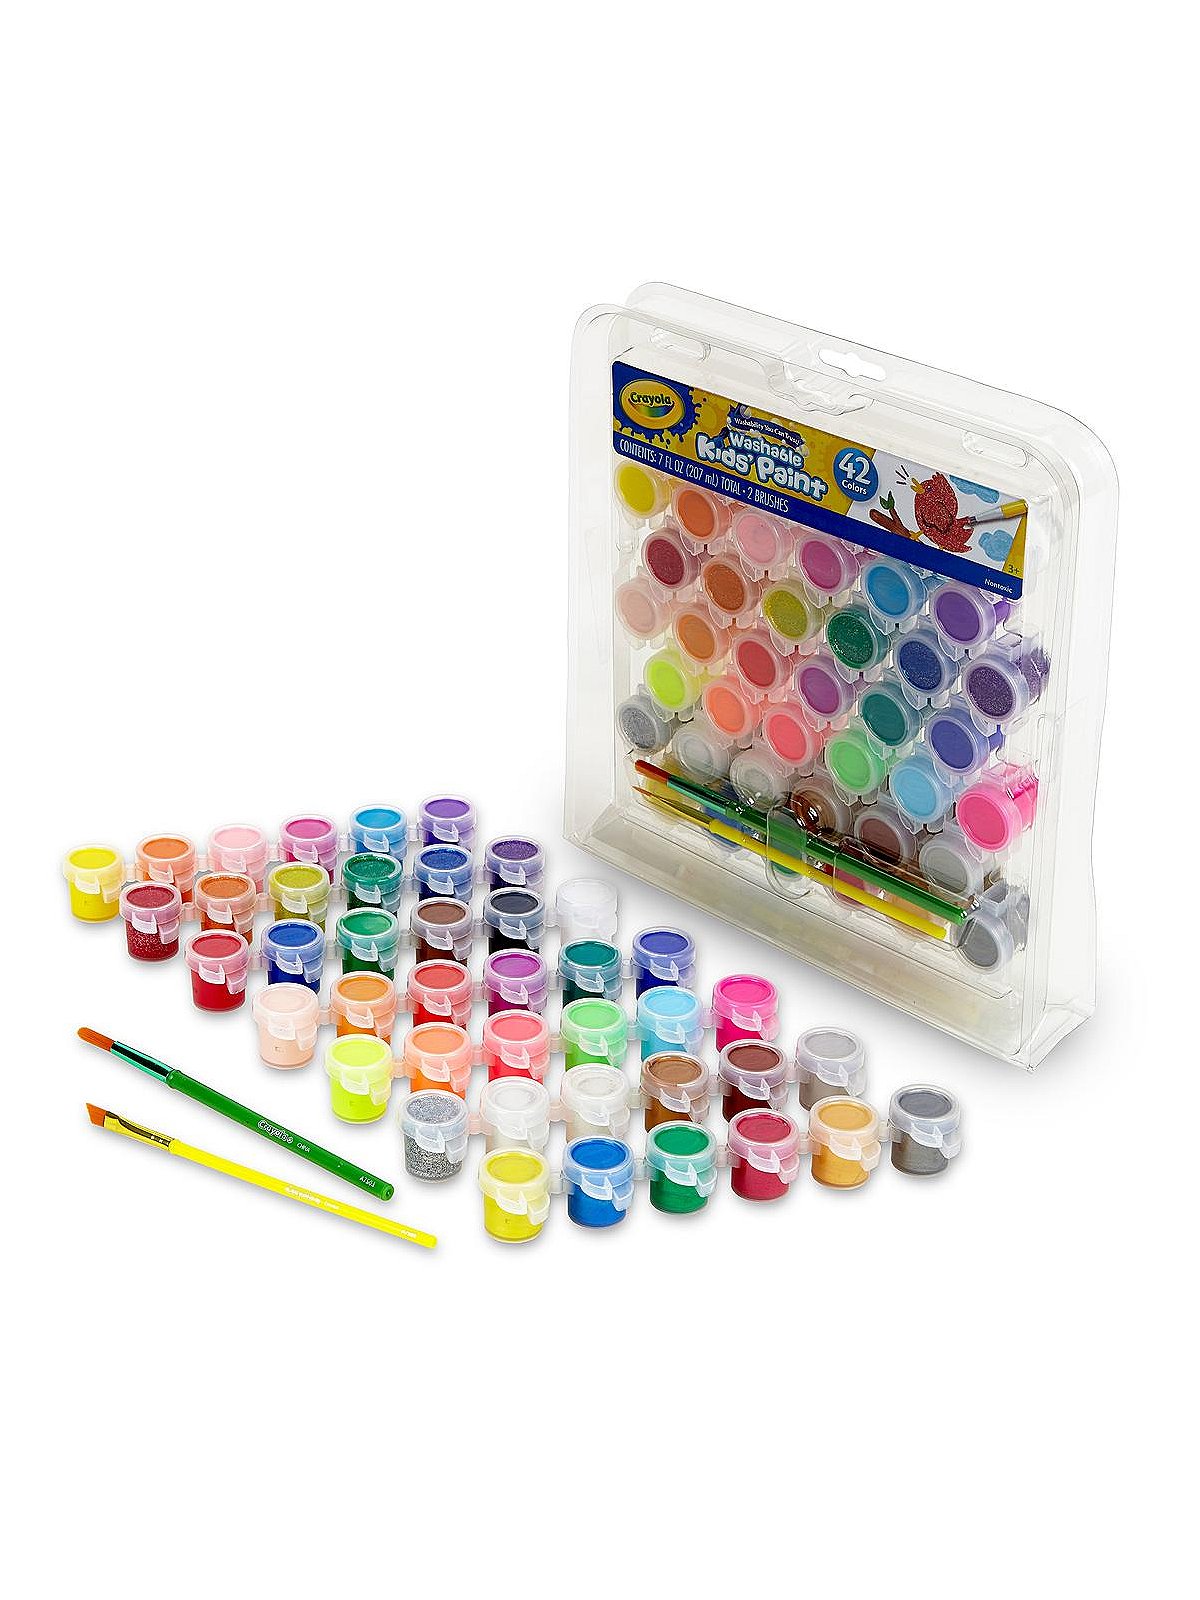 Crayola Washable Paint Set